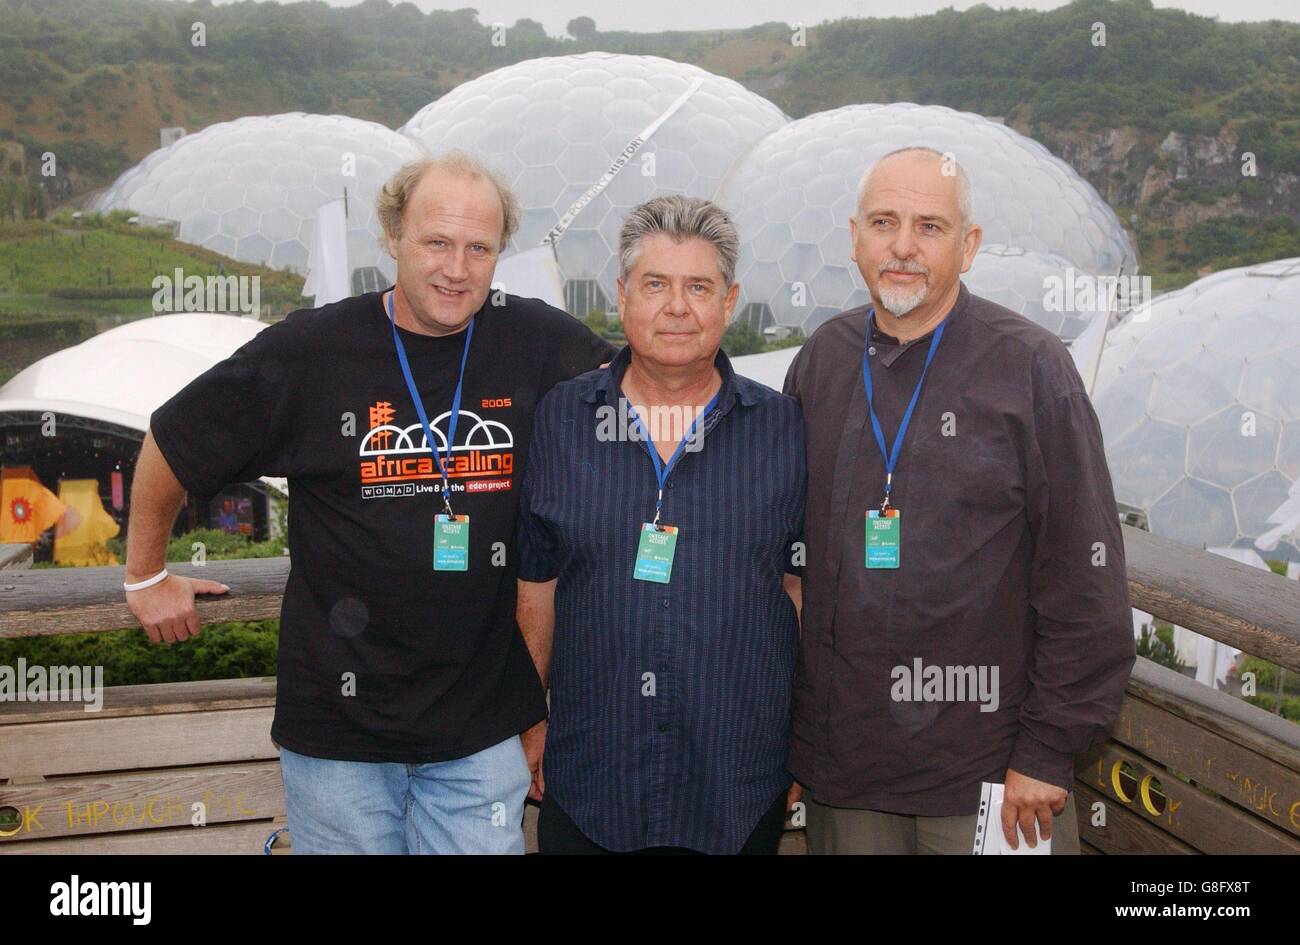 (Sinistra-destra) Tim Smit, amministratore delegato del progetto Eden, Thomas Brooman e Peter Gabriel, fondatori del WOMAD (World of Music and Dance). Foto Stock